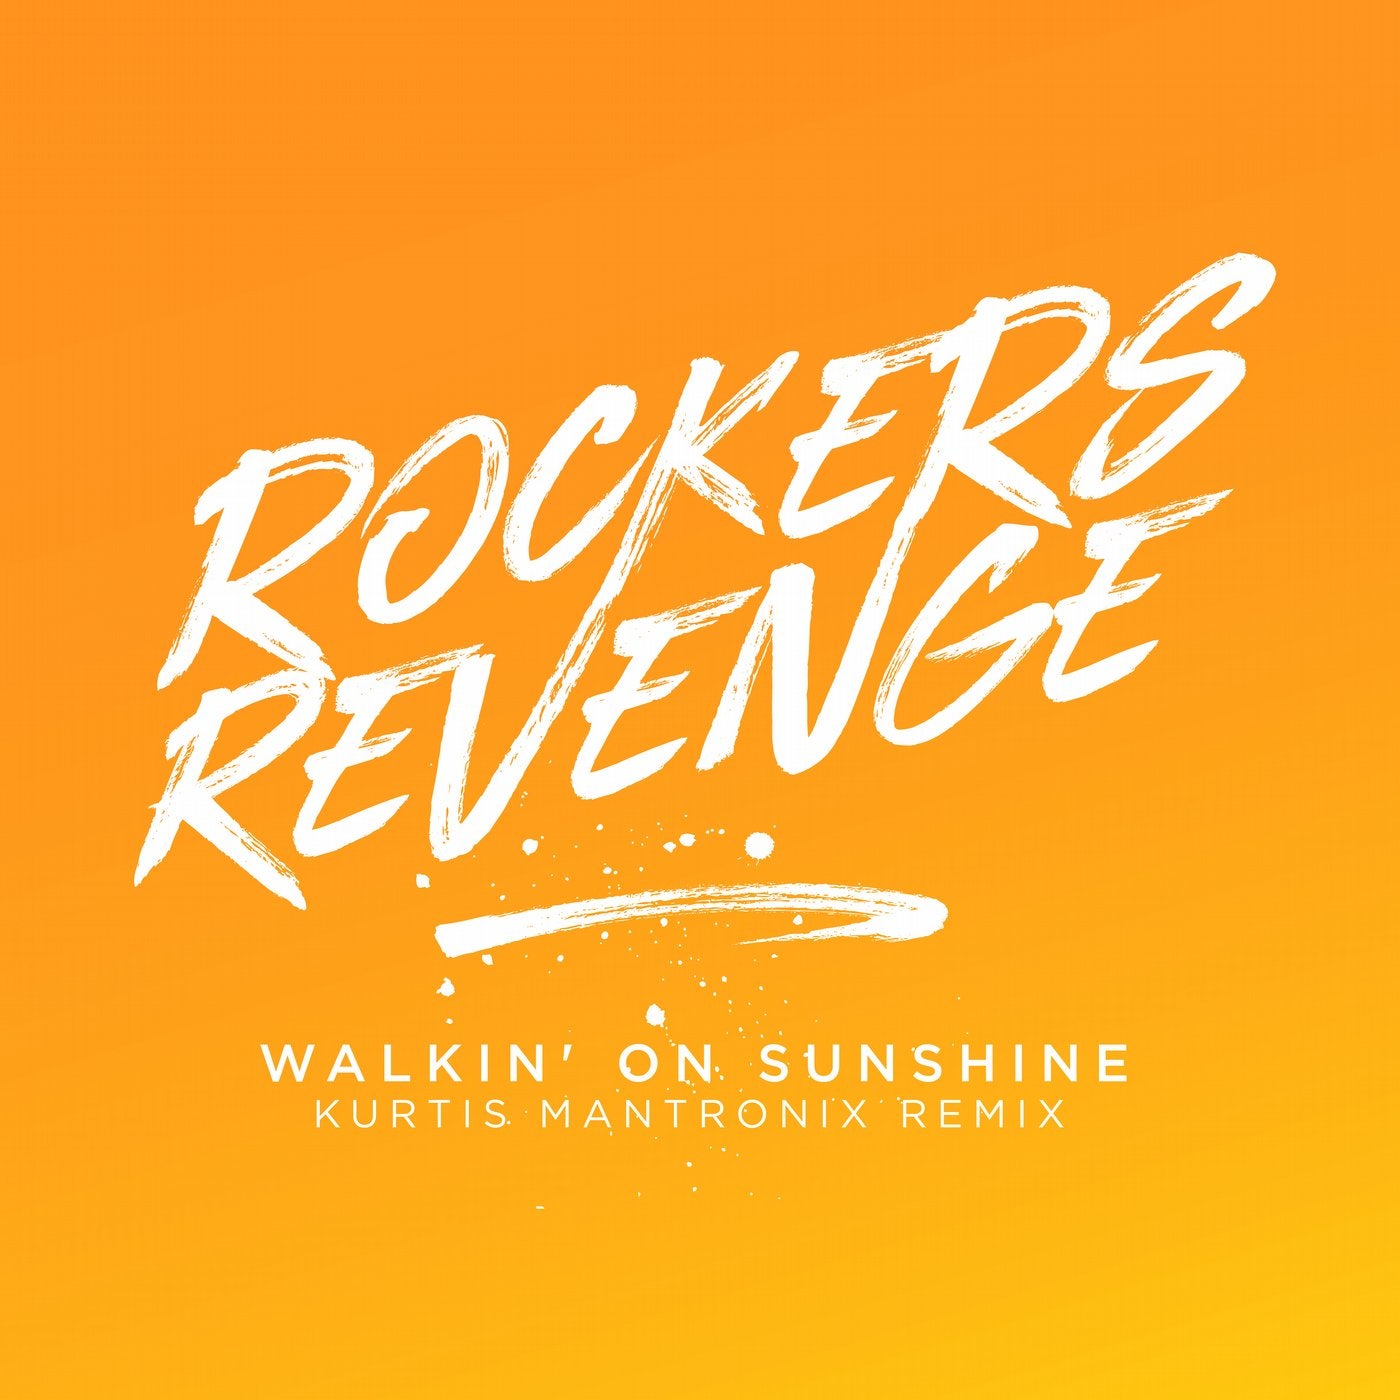 Walkin' on Sunshine - Kurtis Mantronix Remix